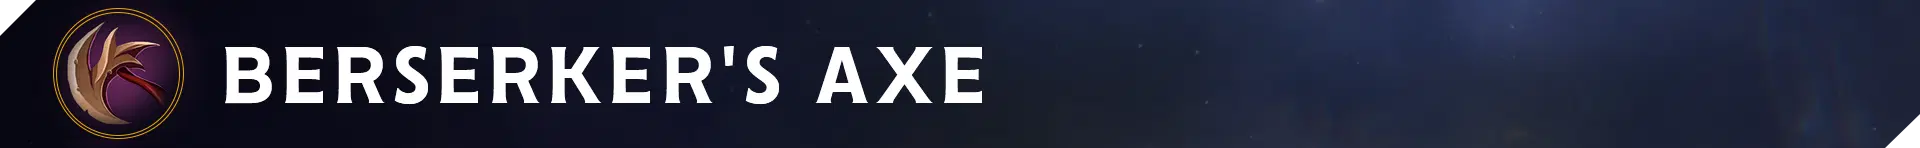 Web Banner Items Berserker-s Axe